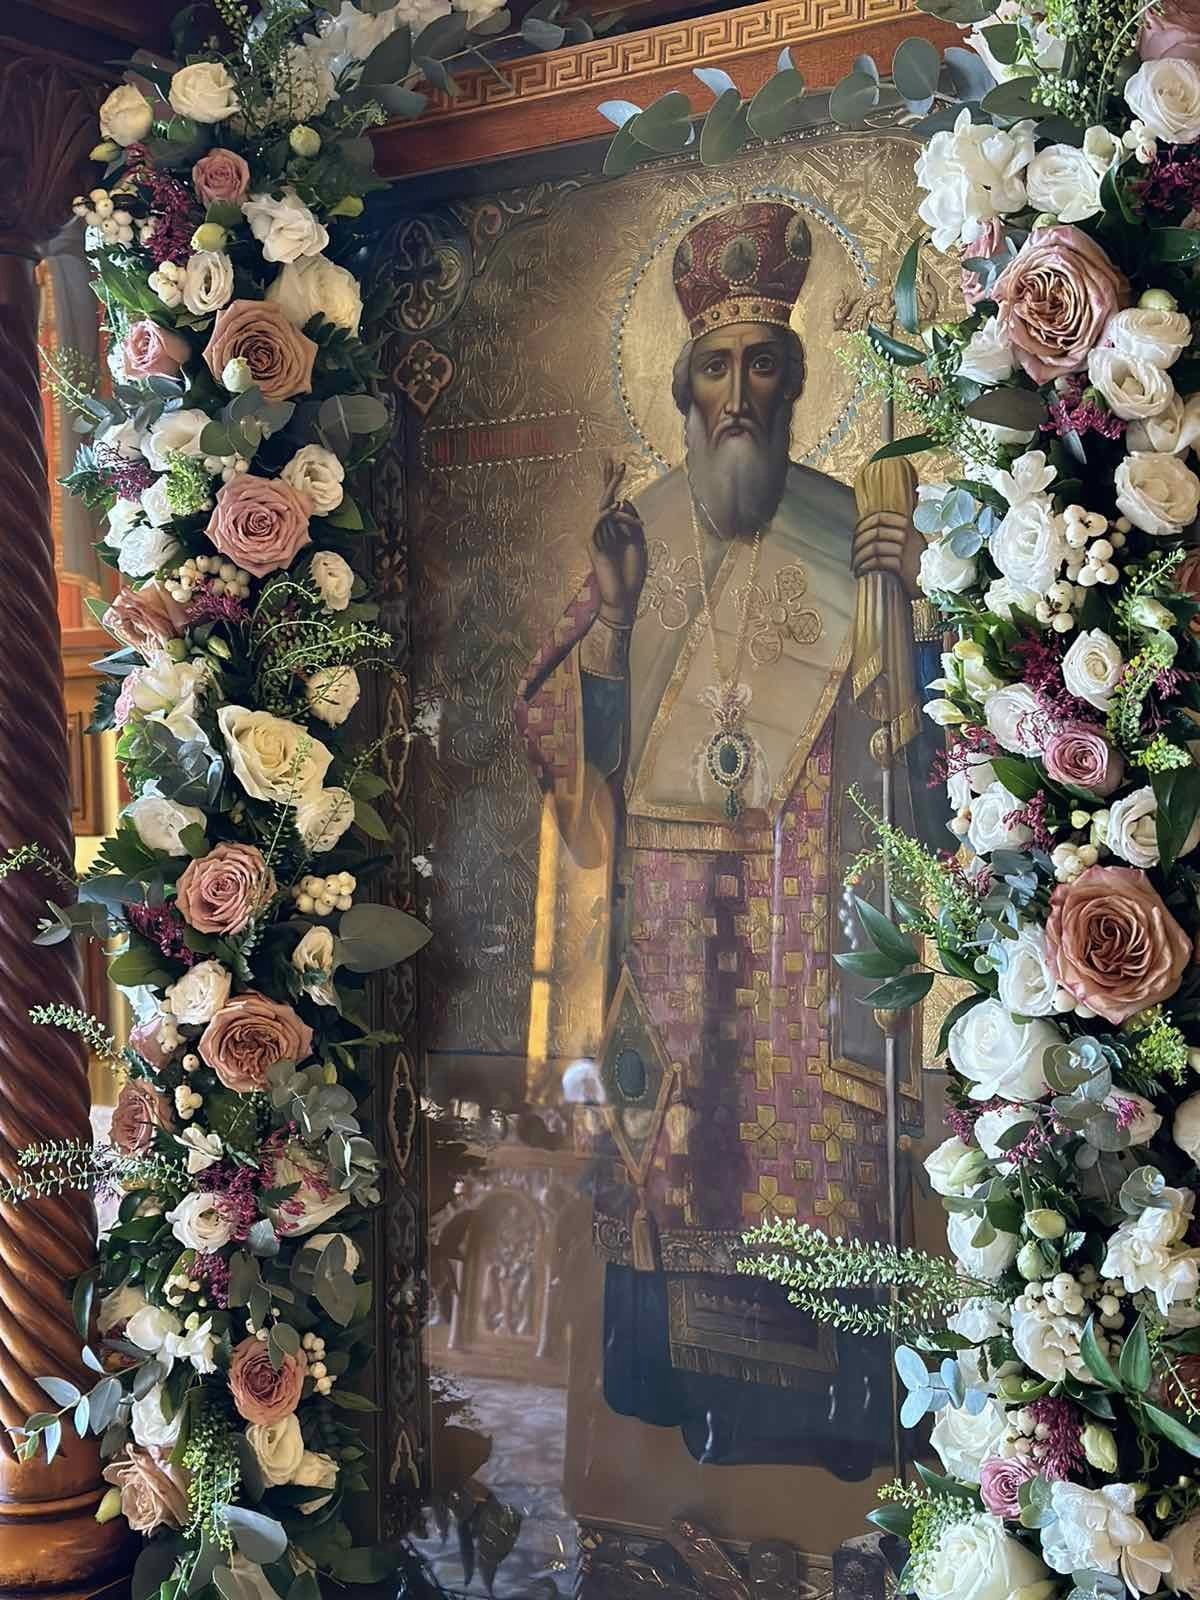 Πανηγυρισε το παρεκκλήσι του Αγίου Νεκταρίου στον Ιερό Ναό Αγίου Χριστοφόρου πολιούχου της πόλεως Αγρινίου